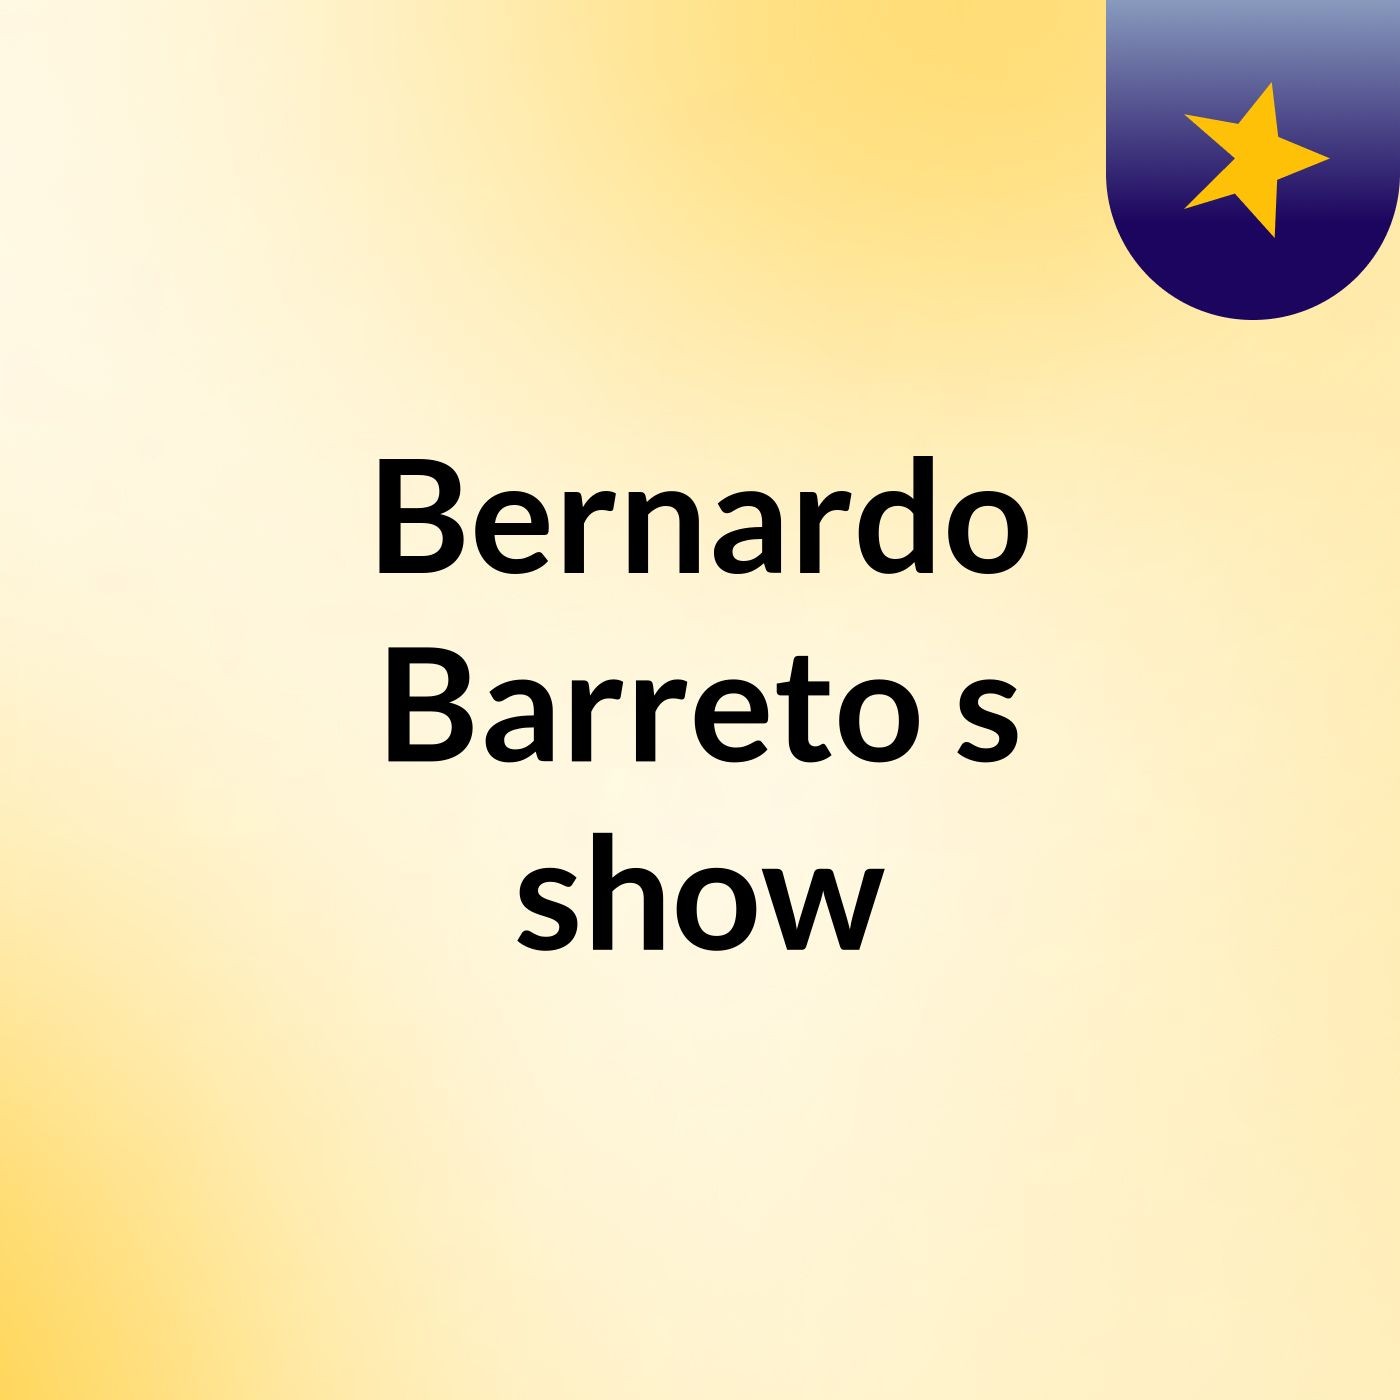 Bernardo Barreto's show